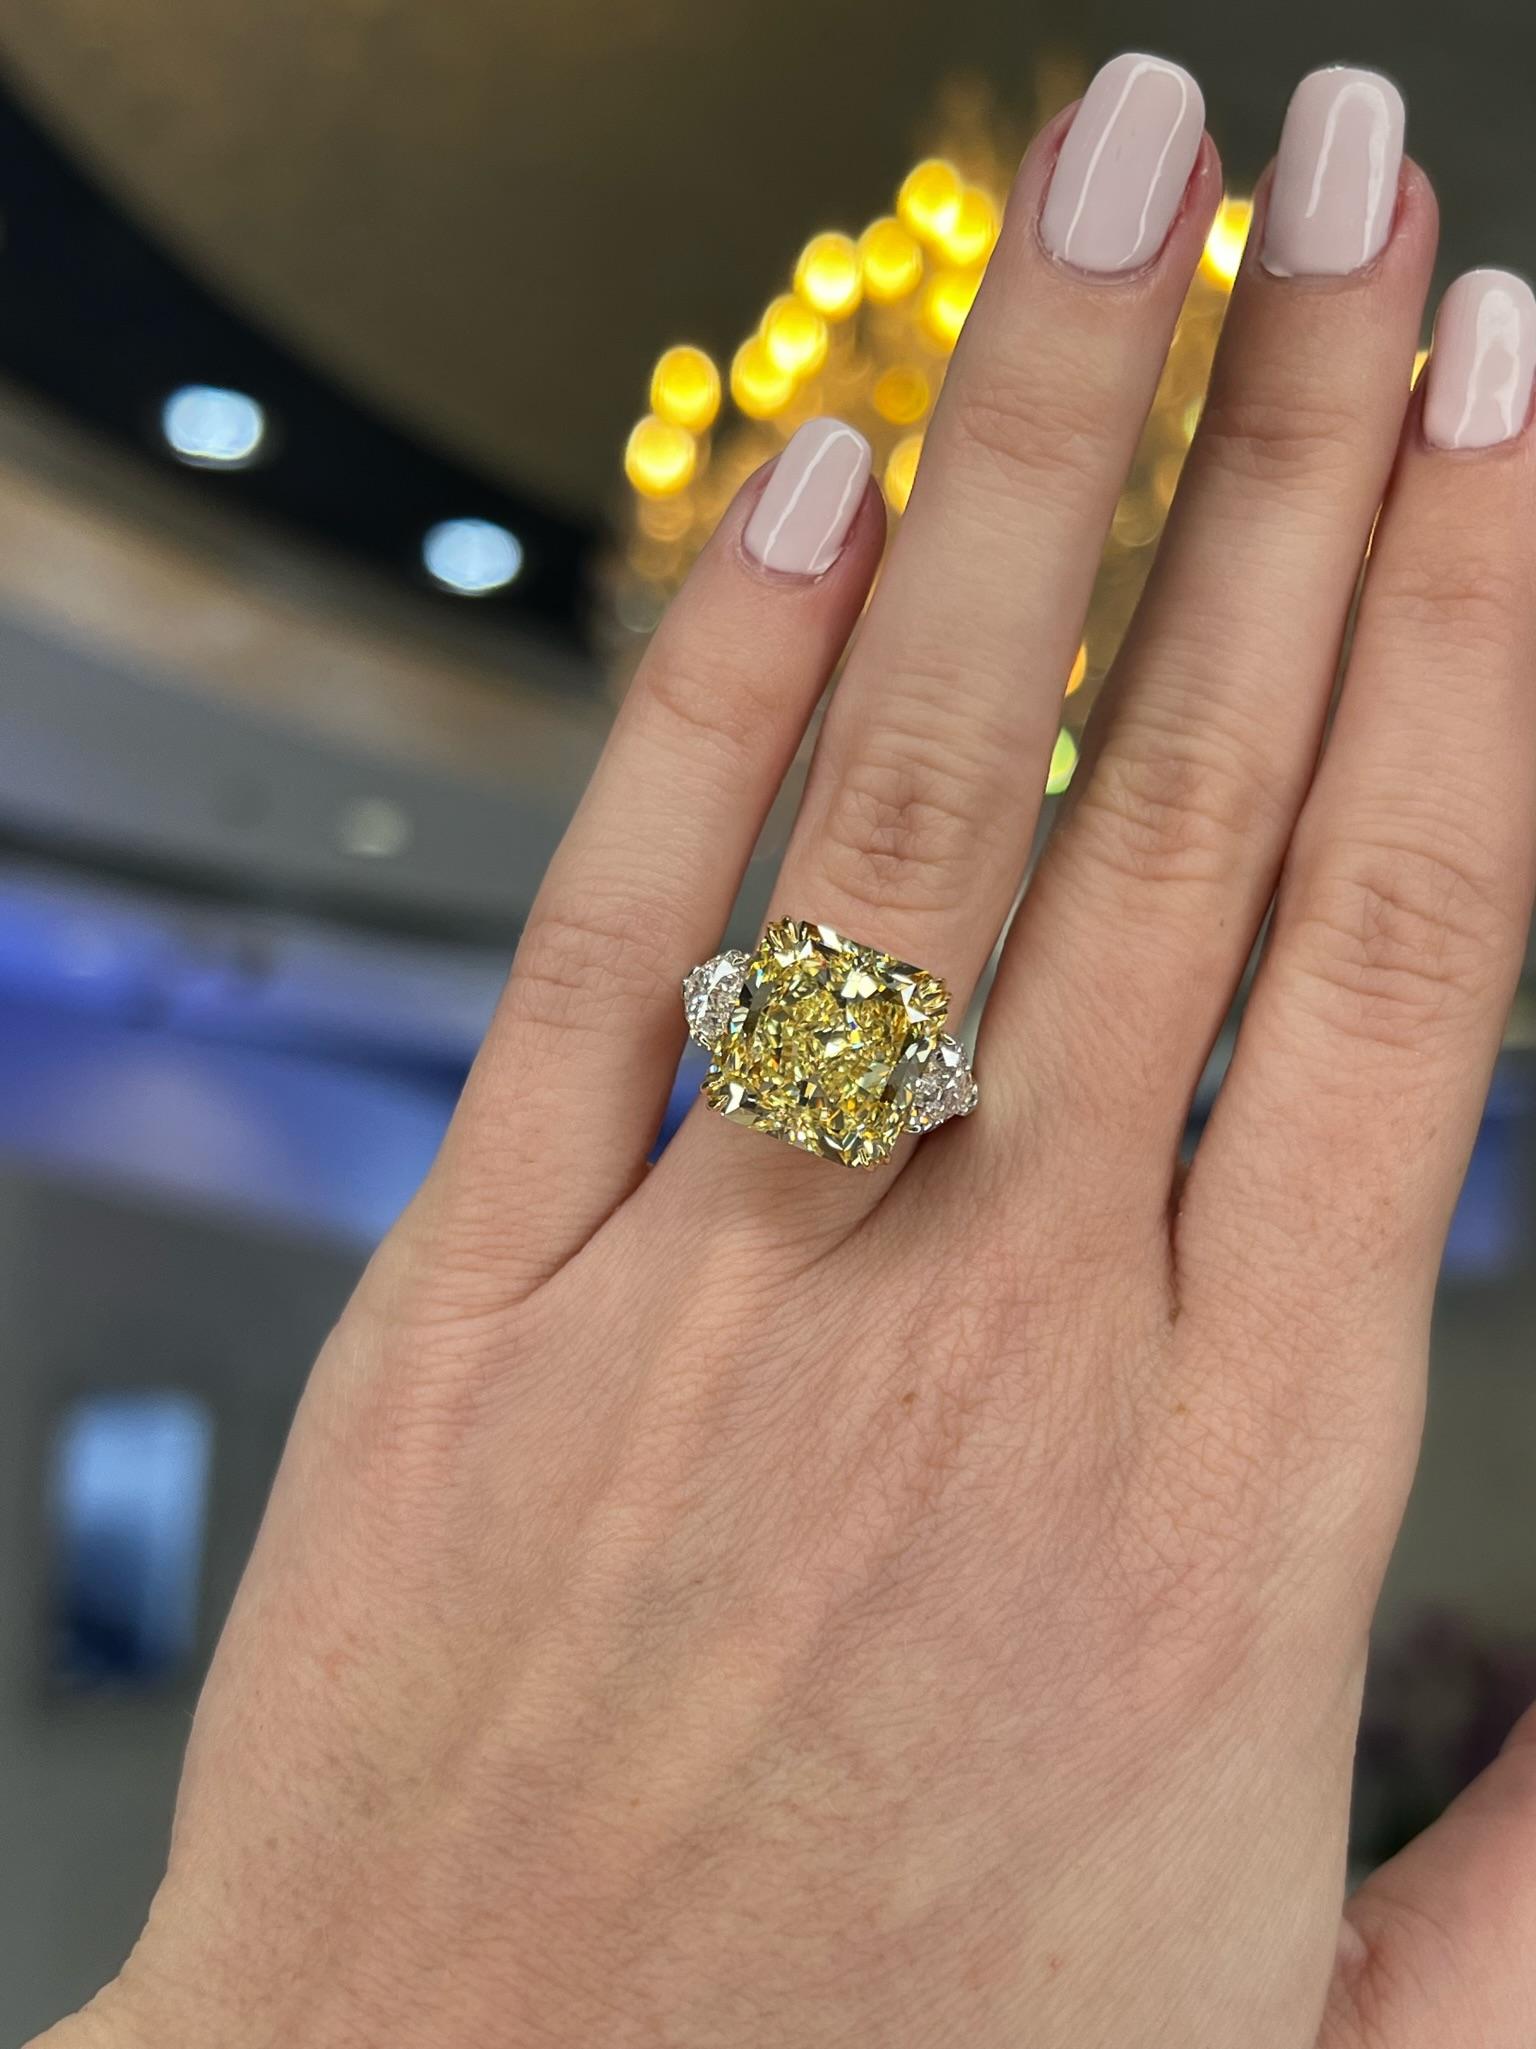 David Rosenberg 10.23 Radiant Fancy Yellow VVS1 GIA Diamond Engagement Ring For Sale 7